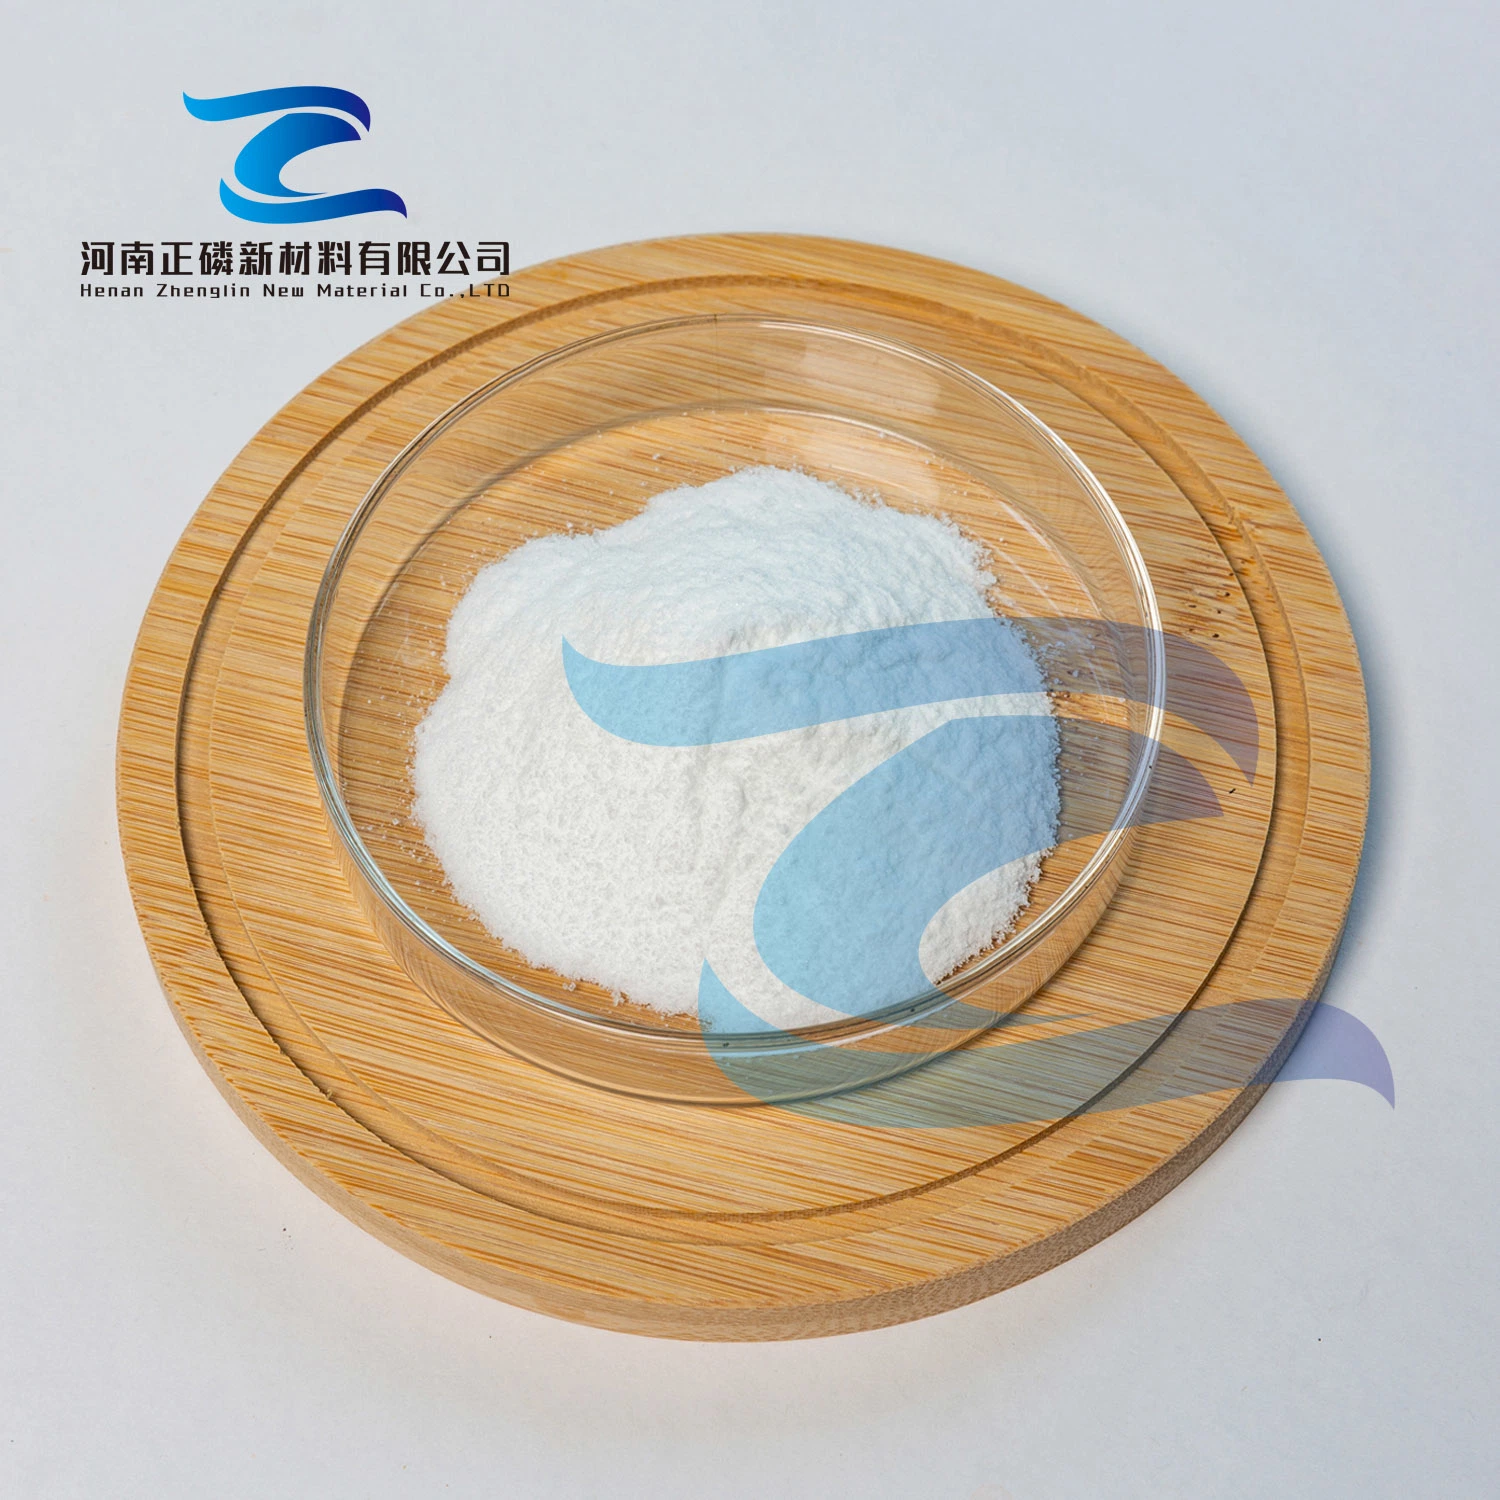 Natriumhexametaphosphat industriell Grade Wasseraufbereitung Reinigungsmittel Drucken und Färben Hilfsstoffe National Standard High Content Excellent Grade Produkt